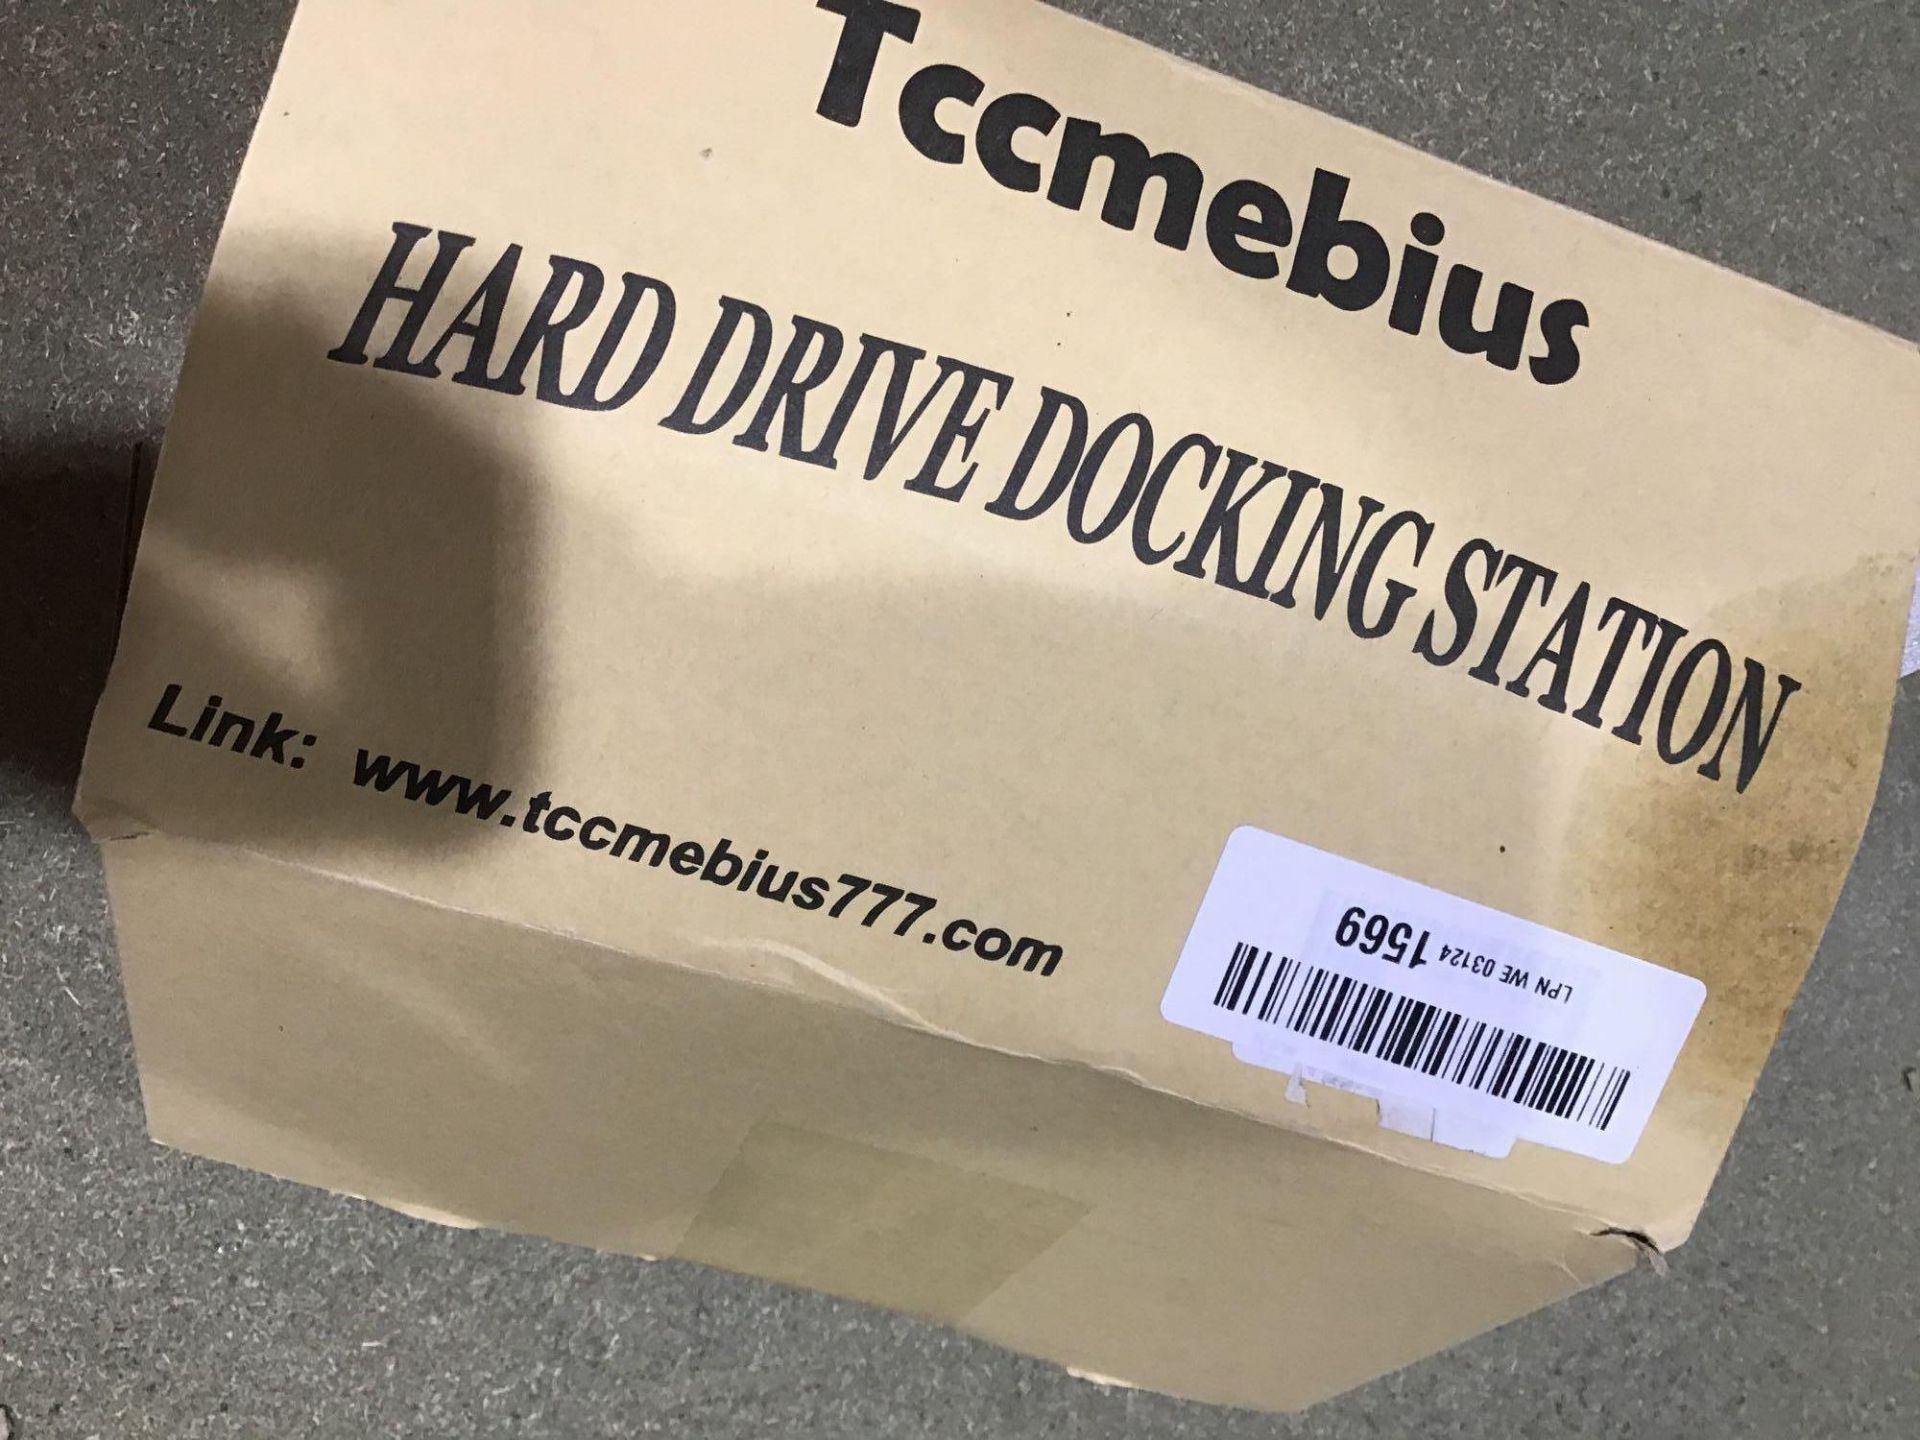 Tccmebius Hard Drive Socking Station - Image 2 of 3